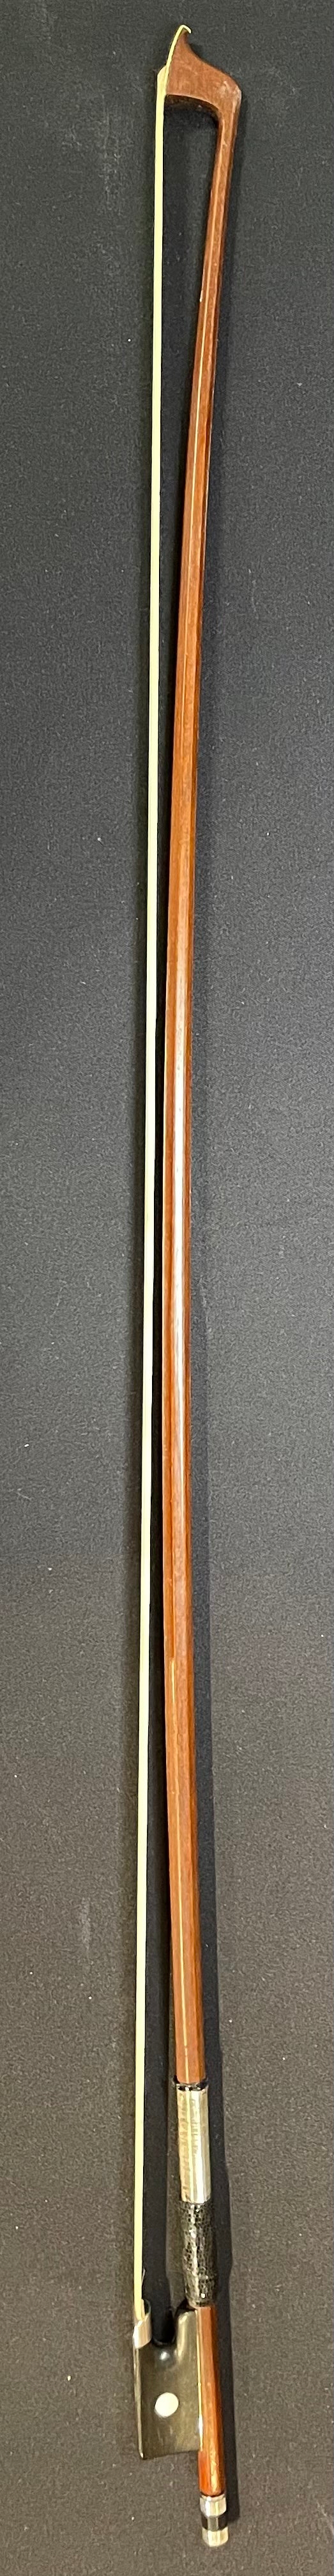 4/4 Violin Bow - H.R. Pfretzschner Wood Model